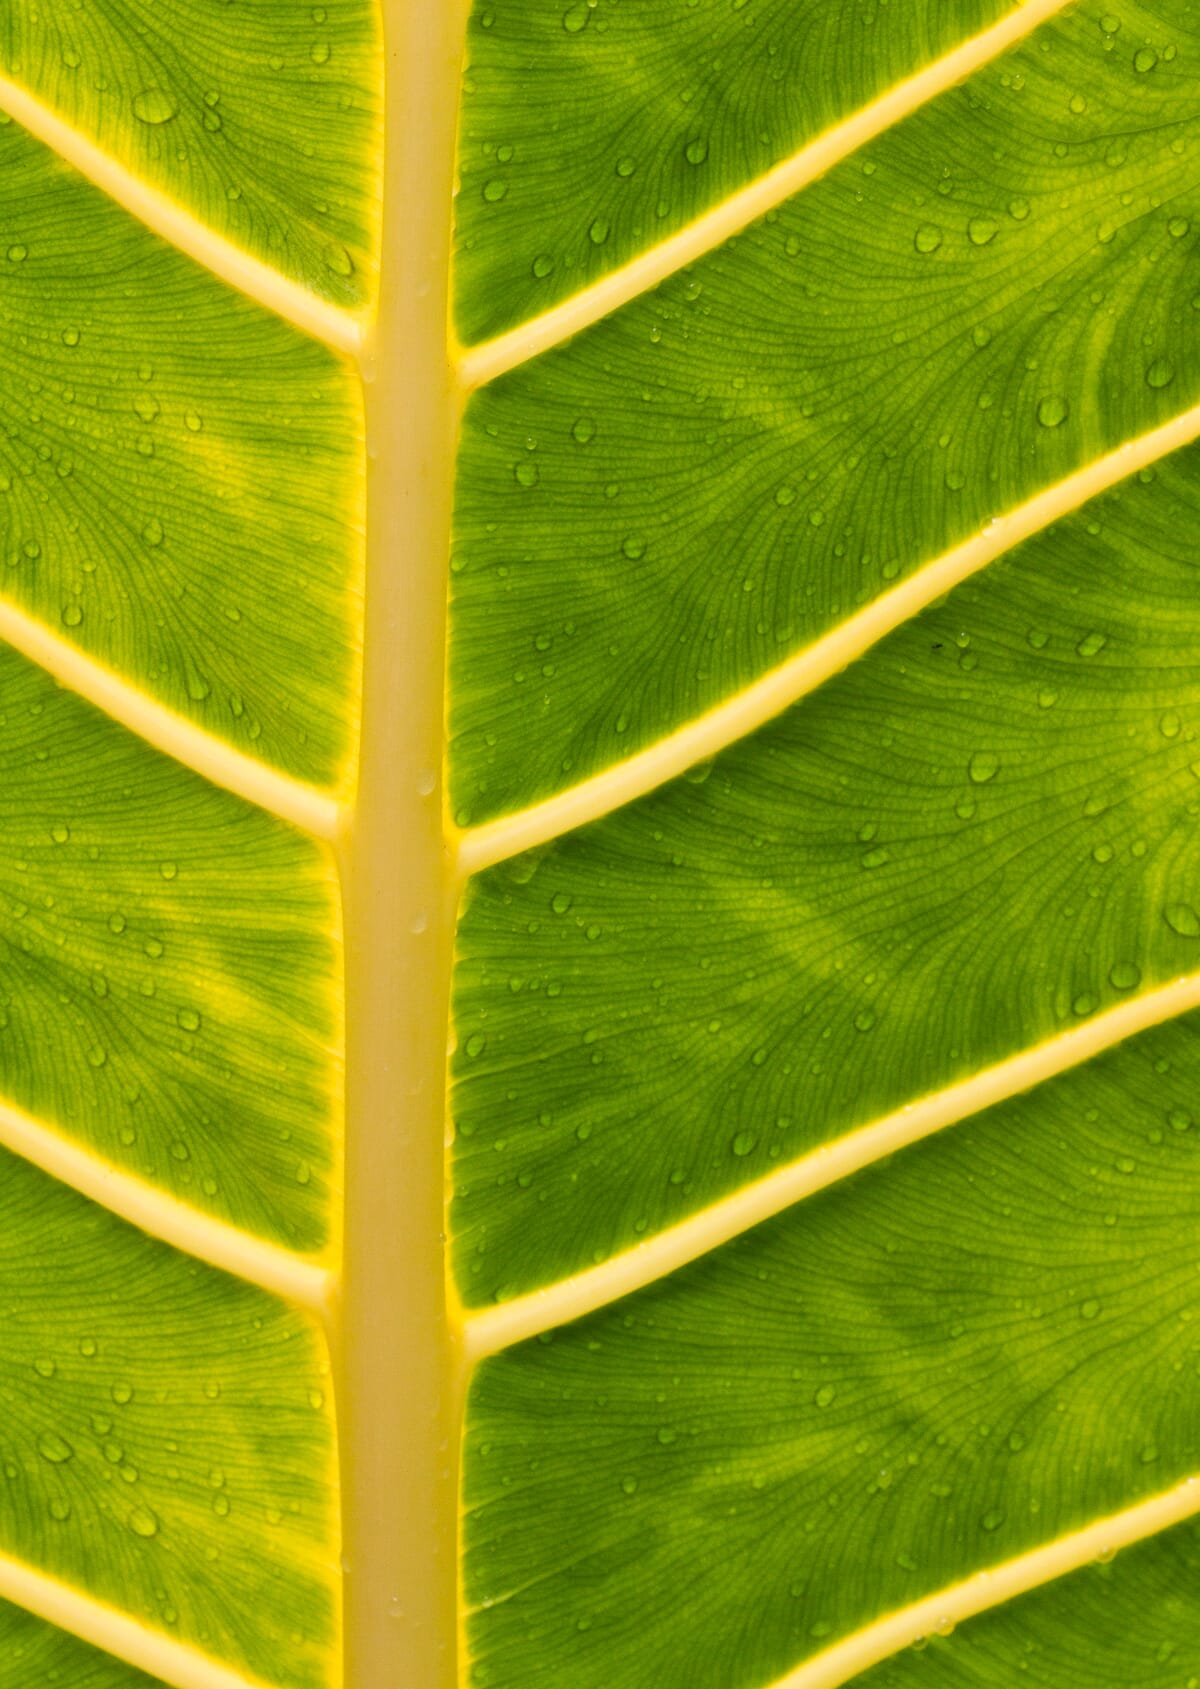 straightened leaf